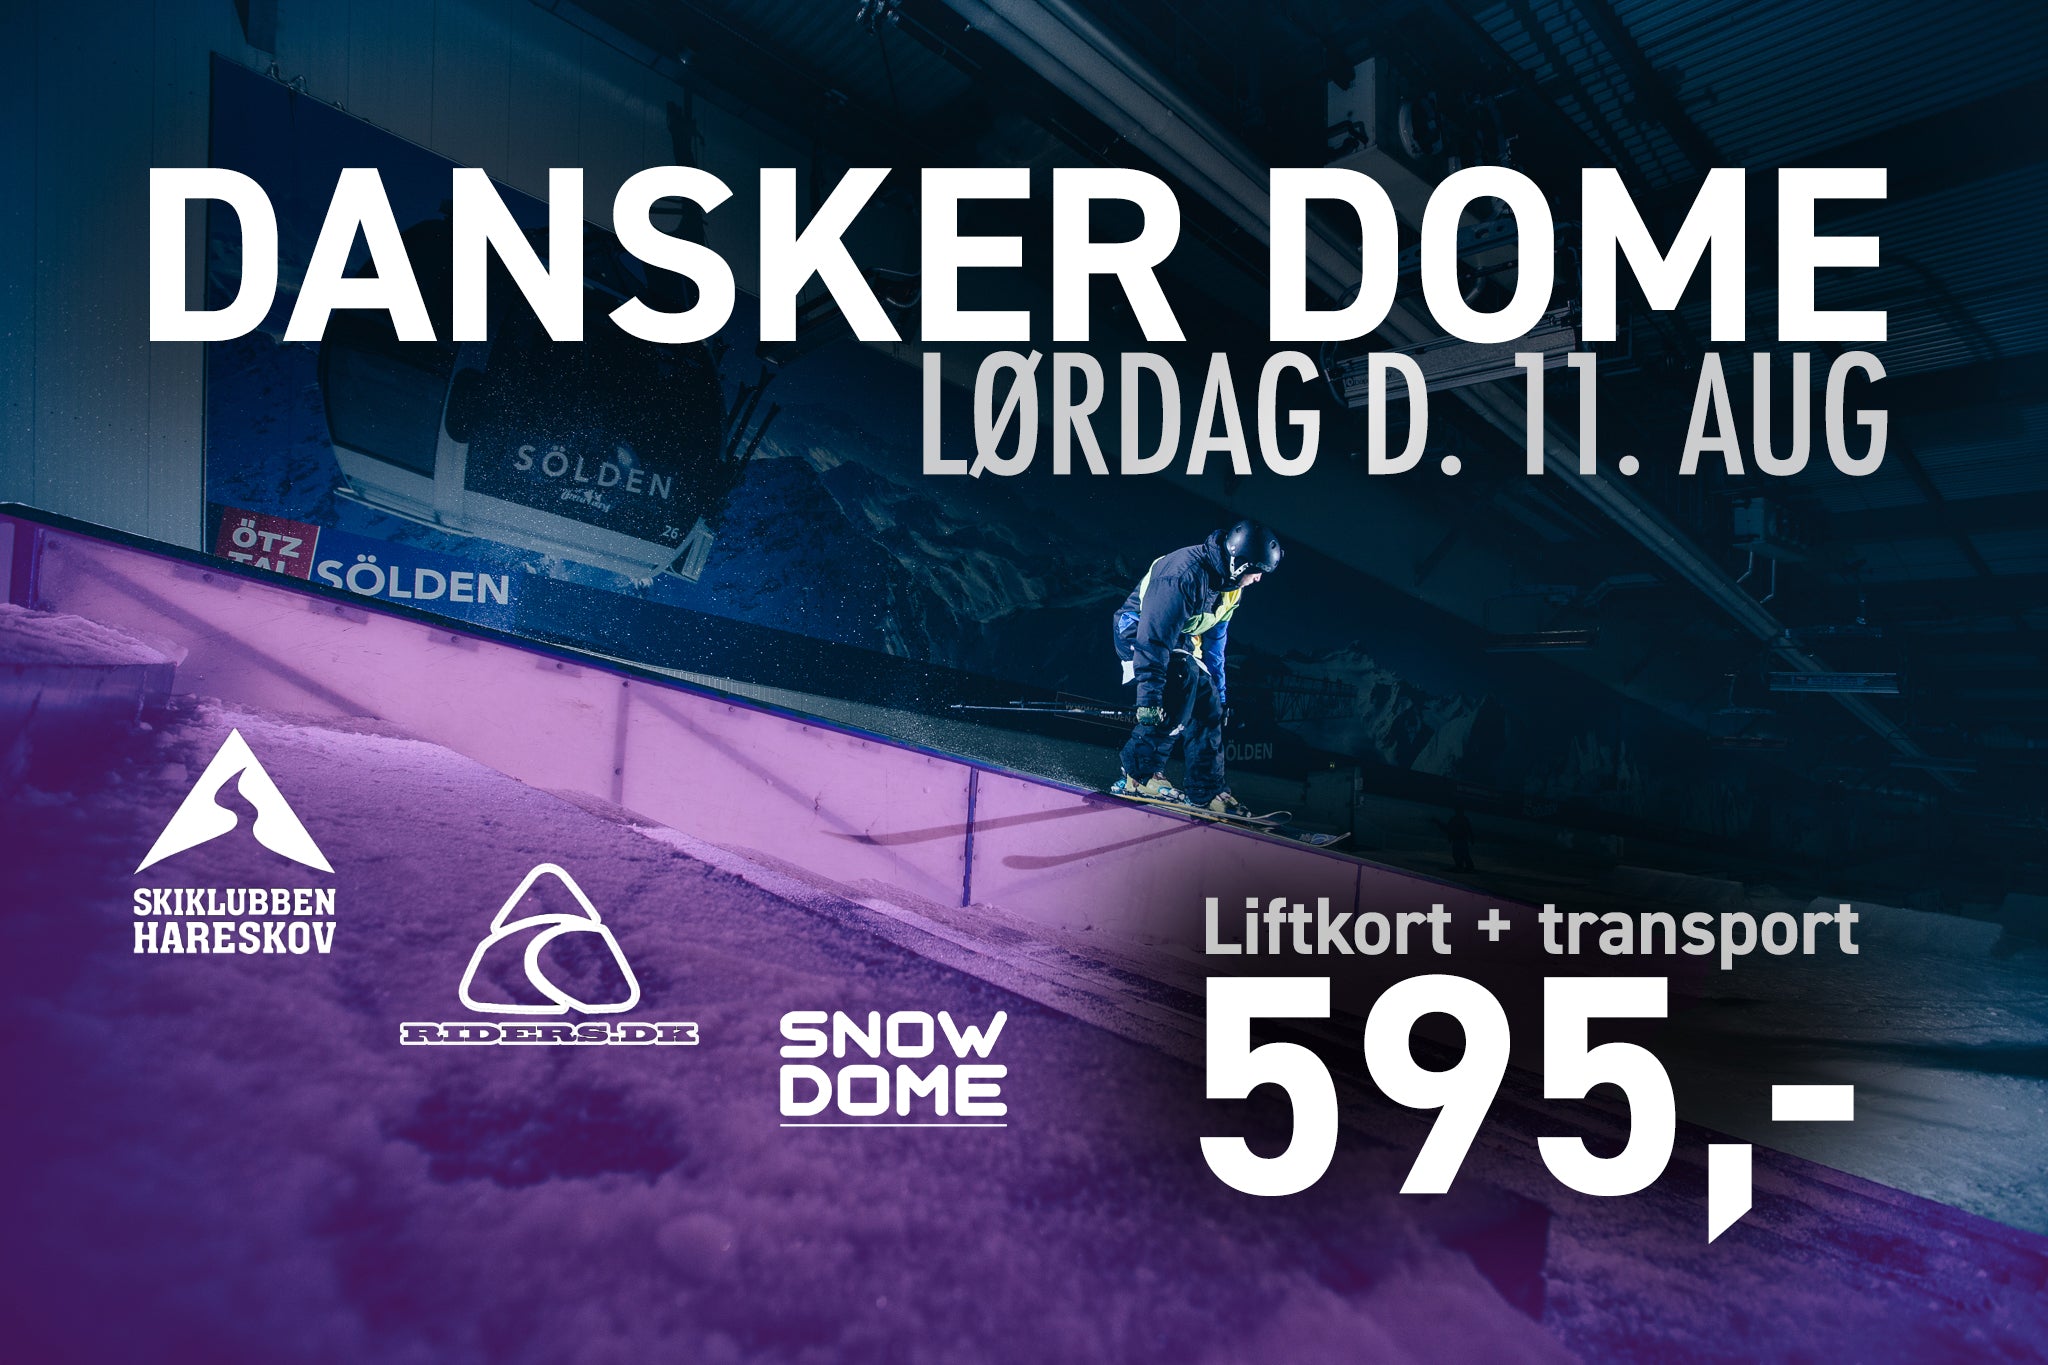 Tag med i Snow Dome til kæmpe danskerfest